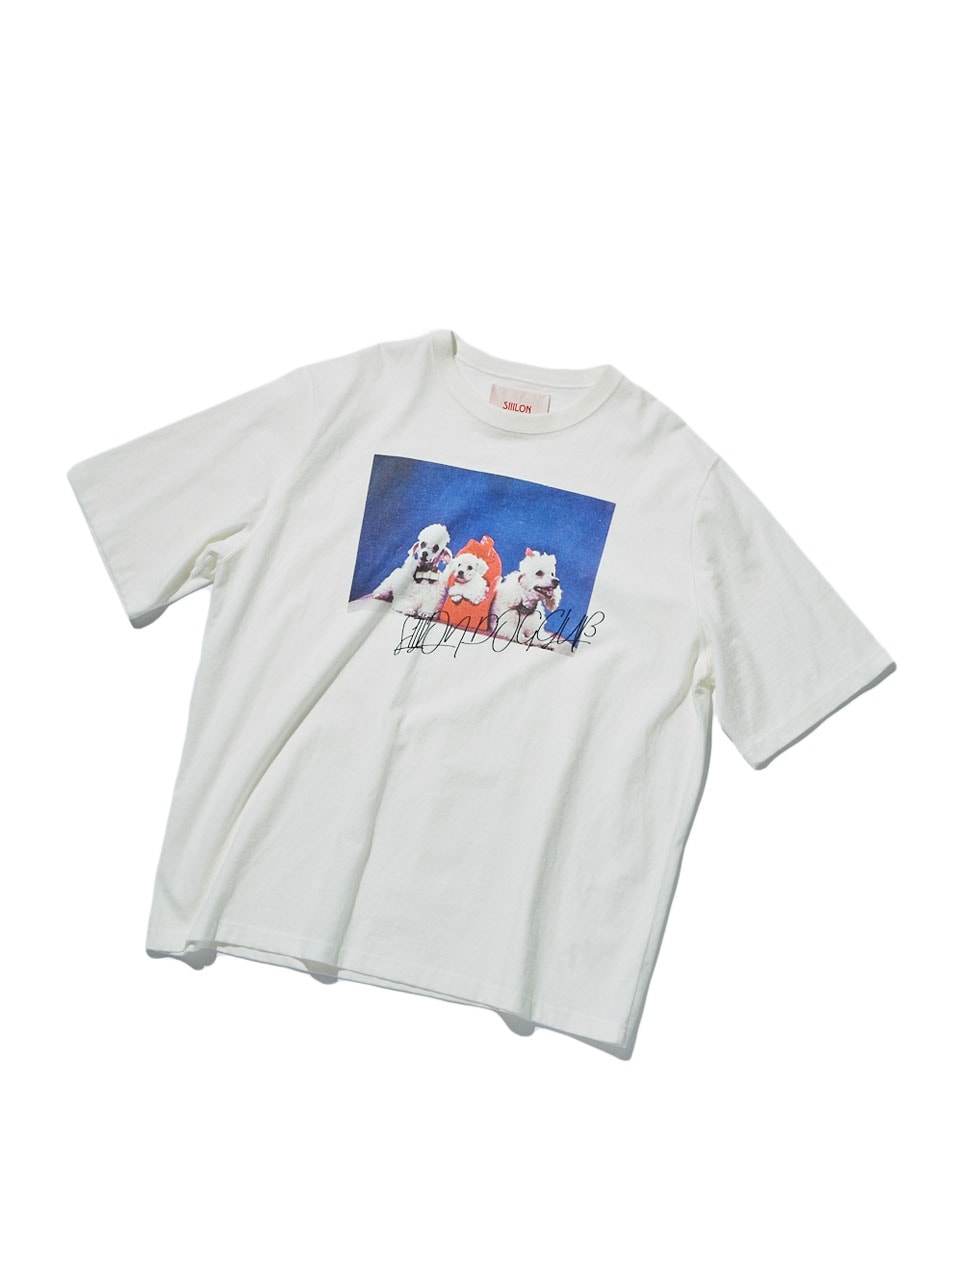 シーロンのTシャツ | 【GINZA】東京発信の最新ファッション